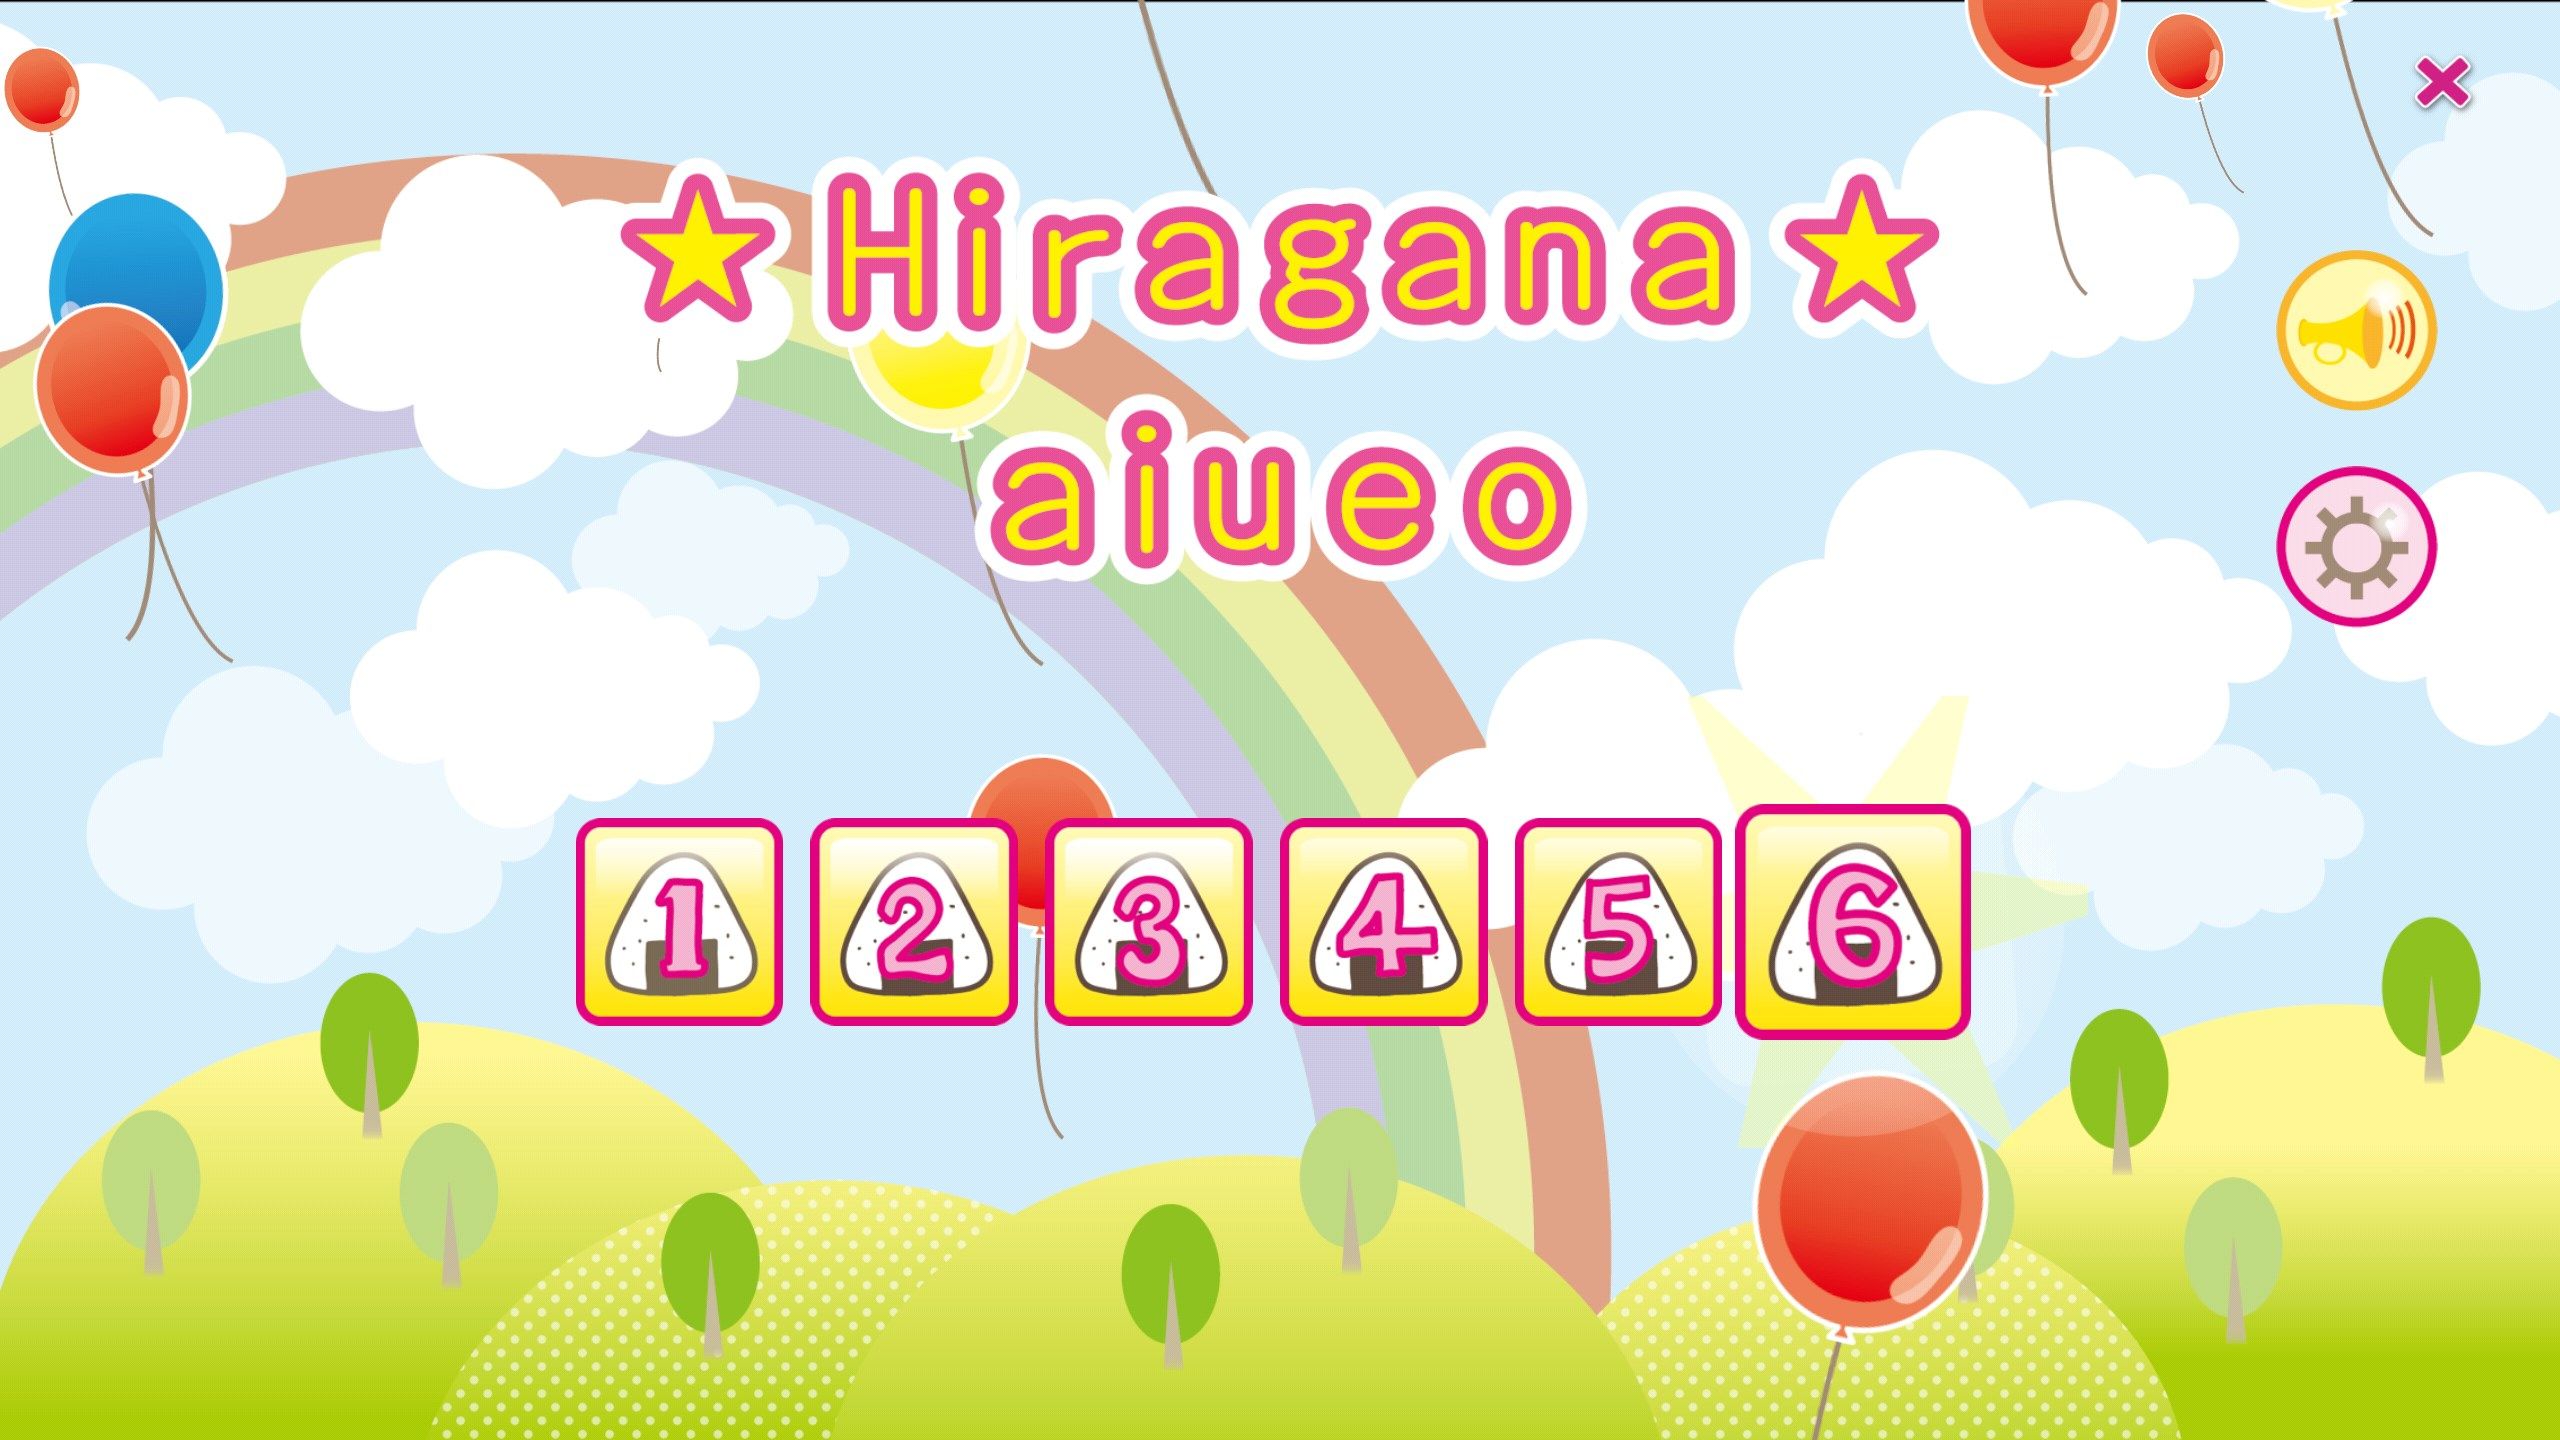 Learn Japanese Hiragana!